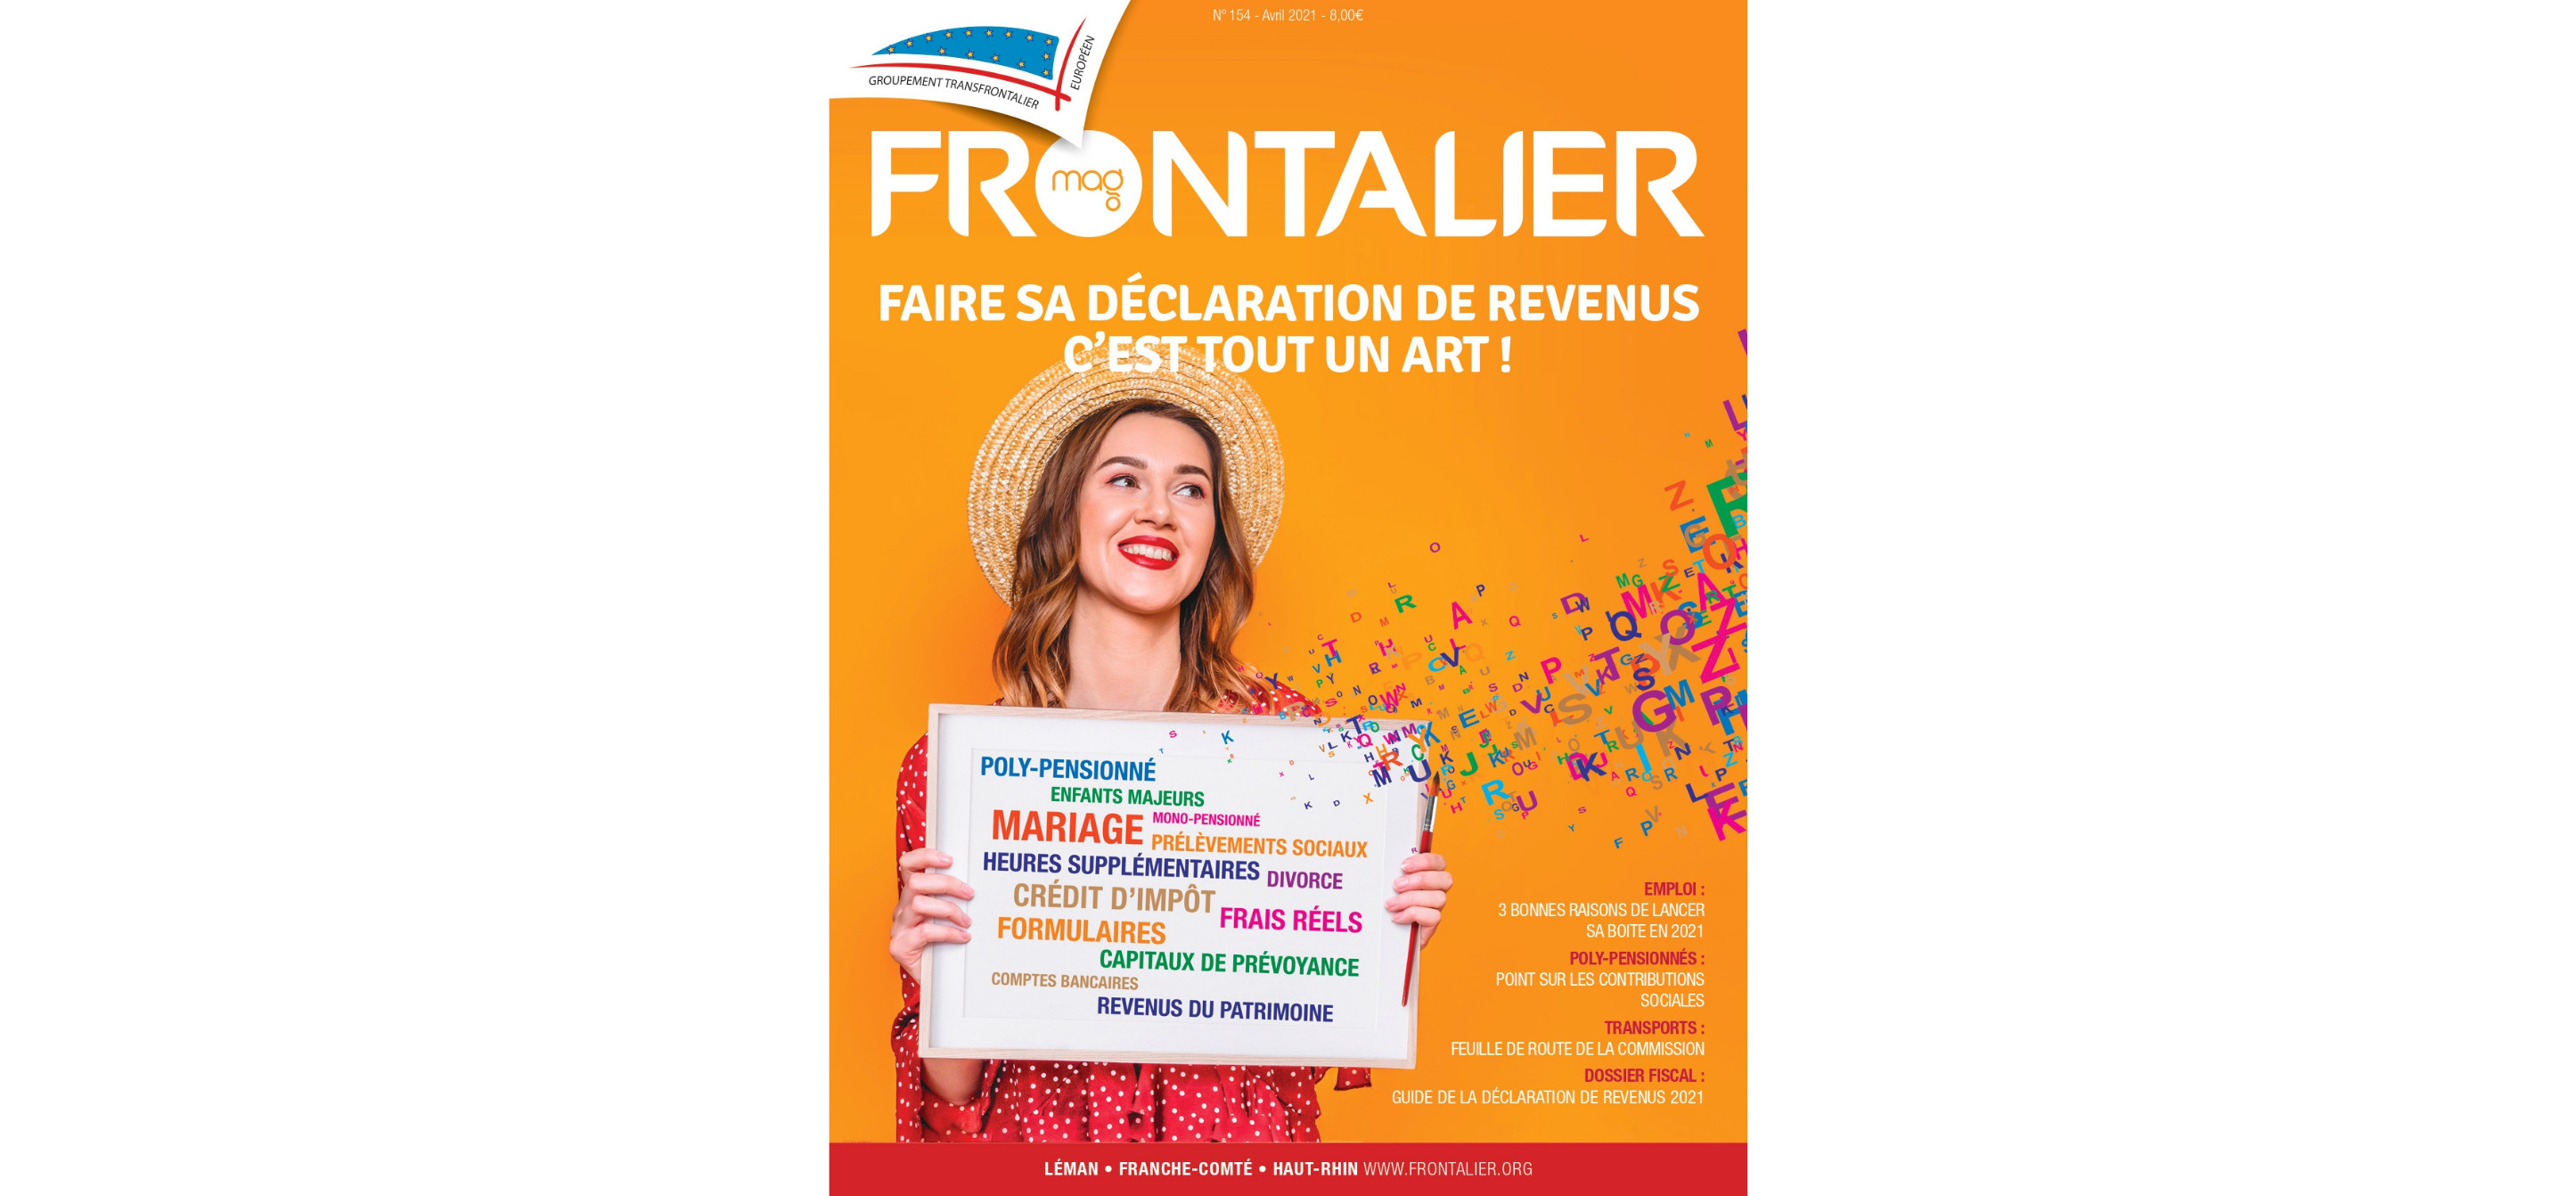 Le Frontalier magazine d'Avril est en ligne